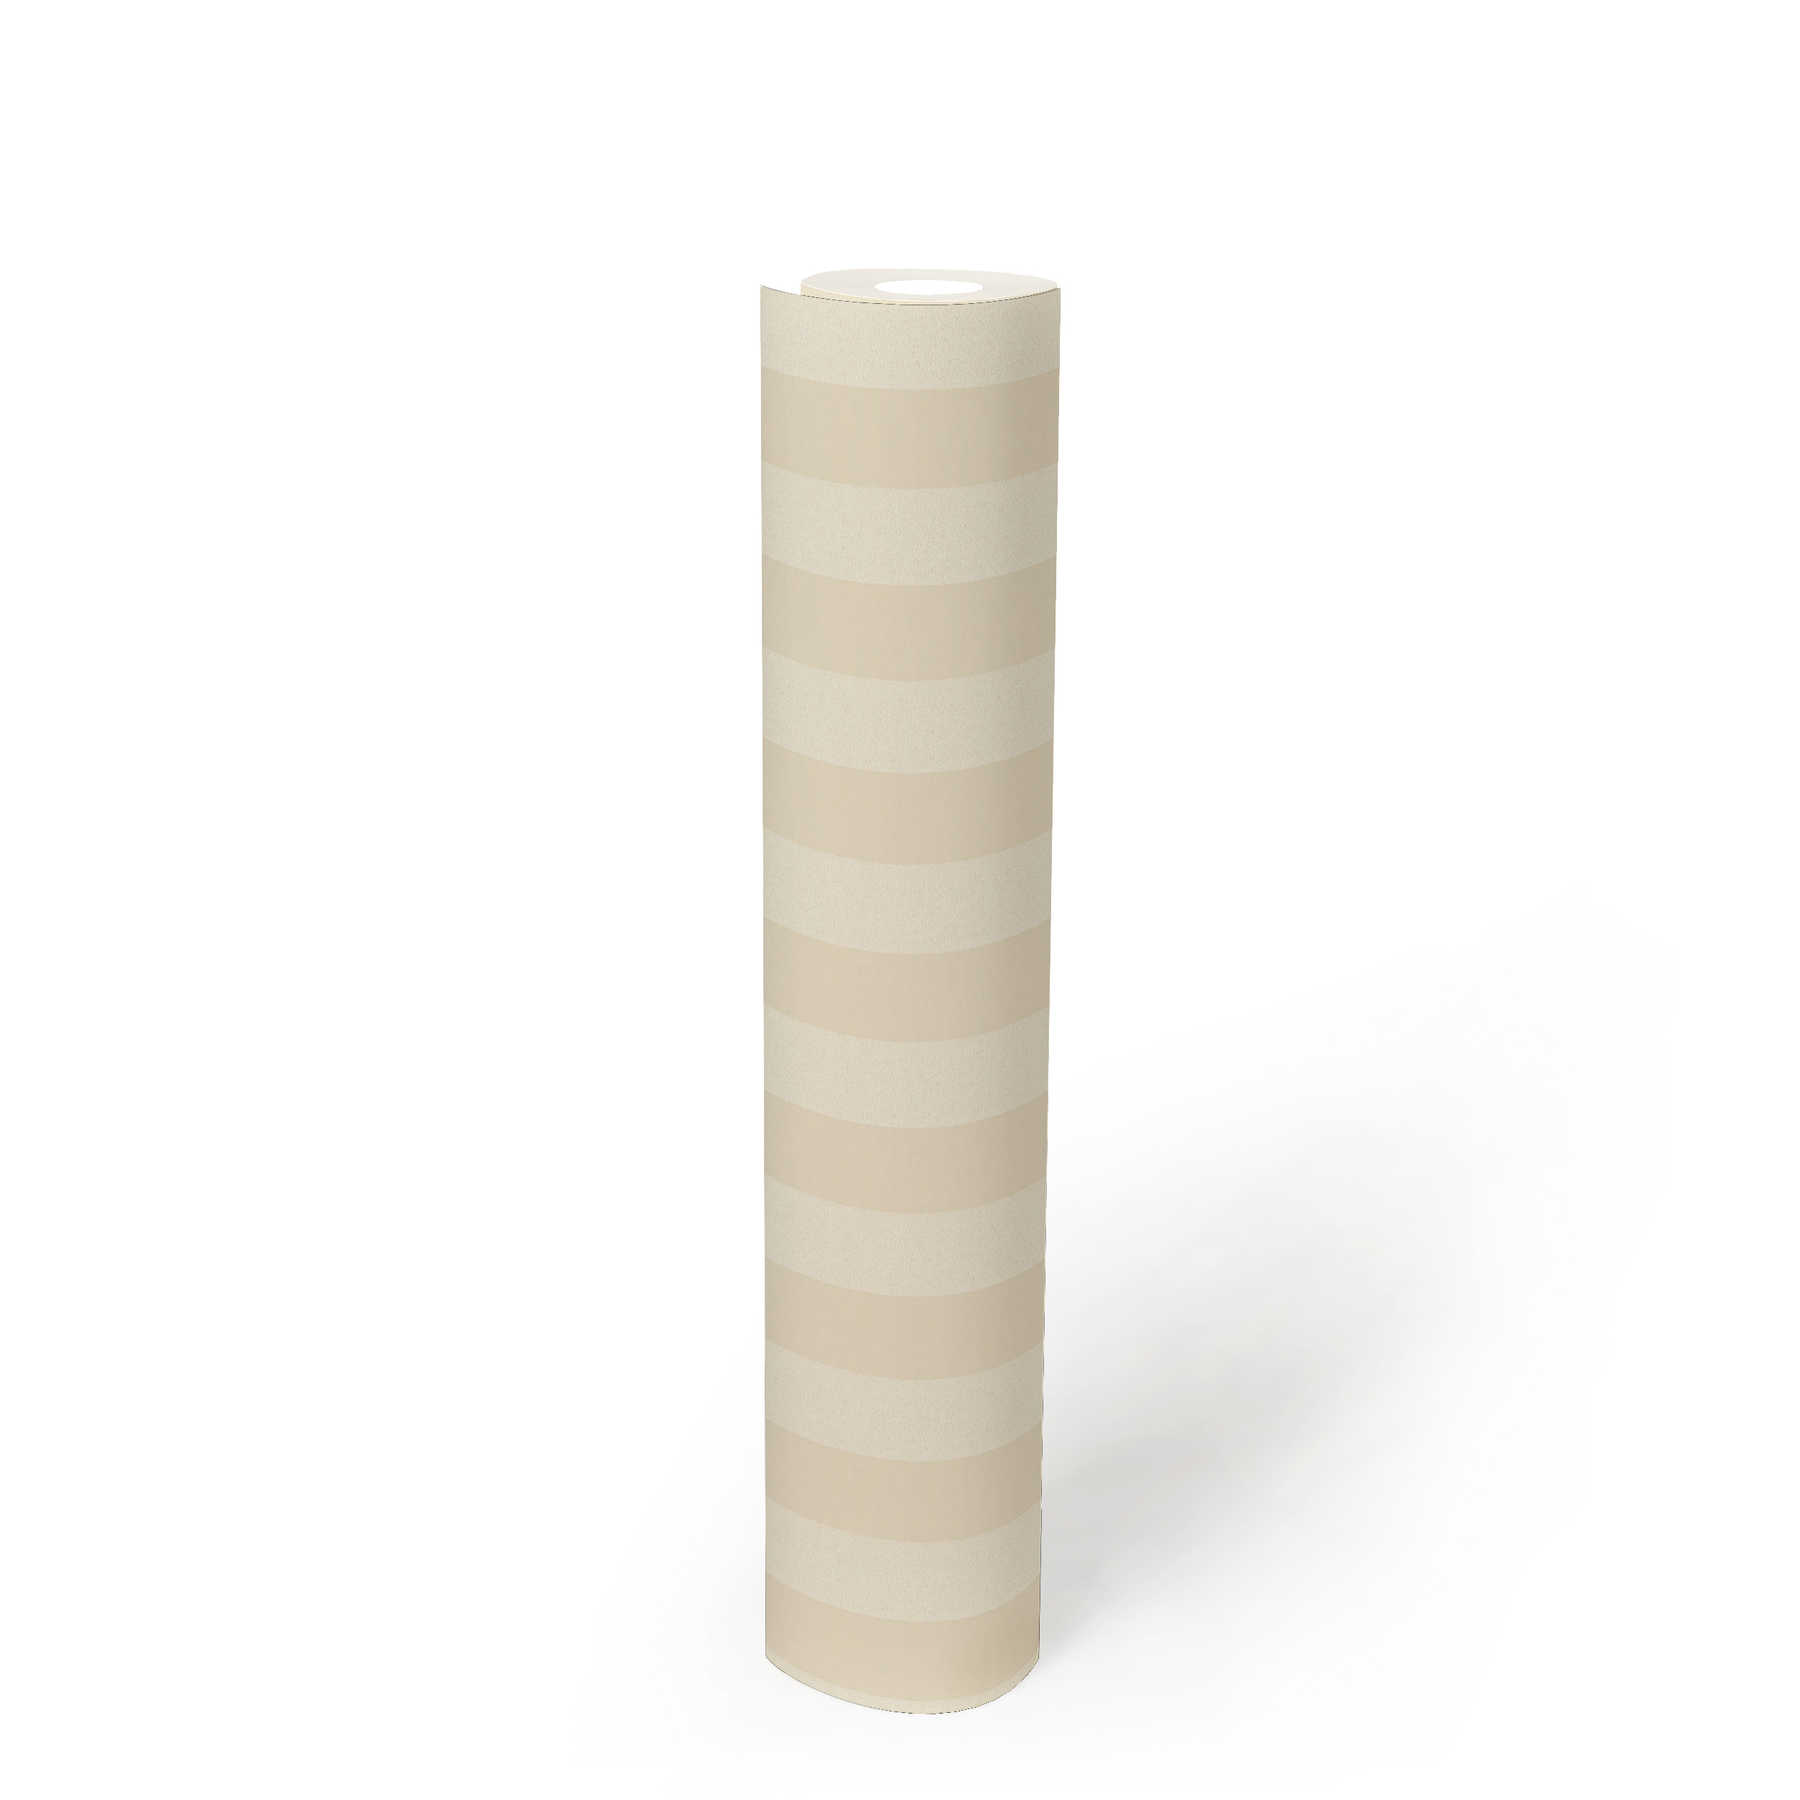             Papel pintado a rayas con motivo en crema claro - beige, crema
        